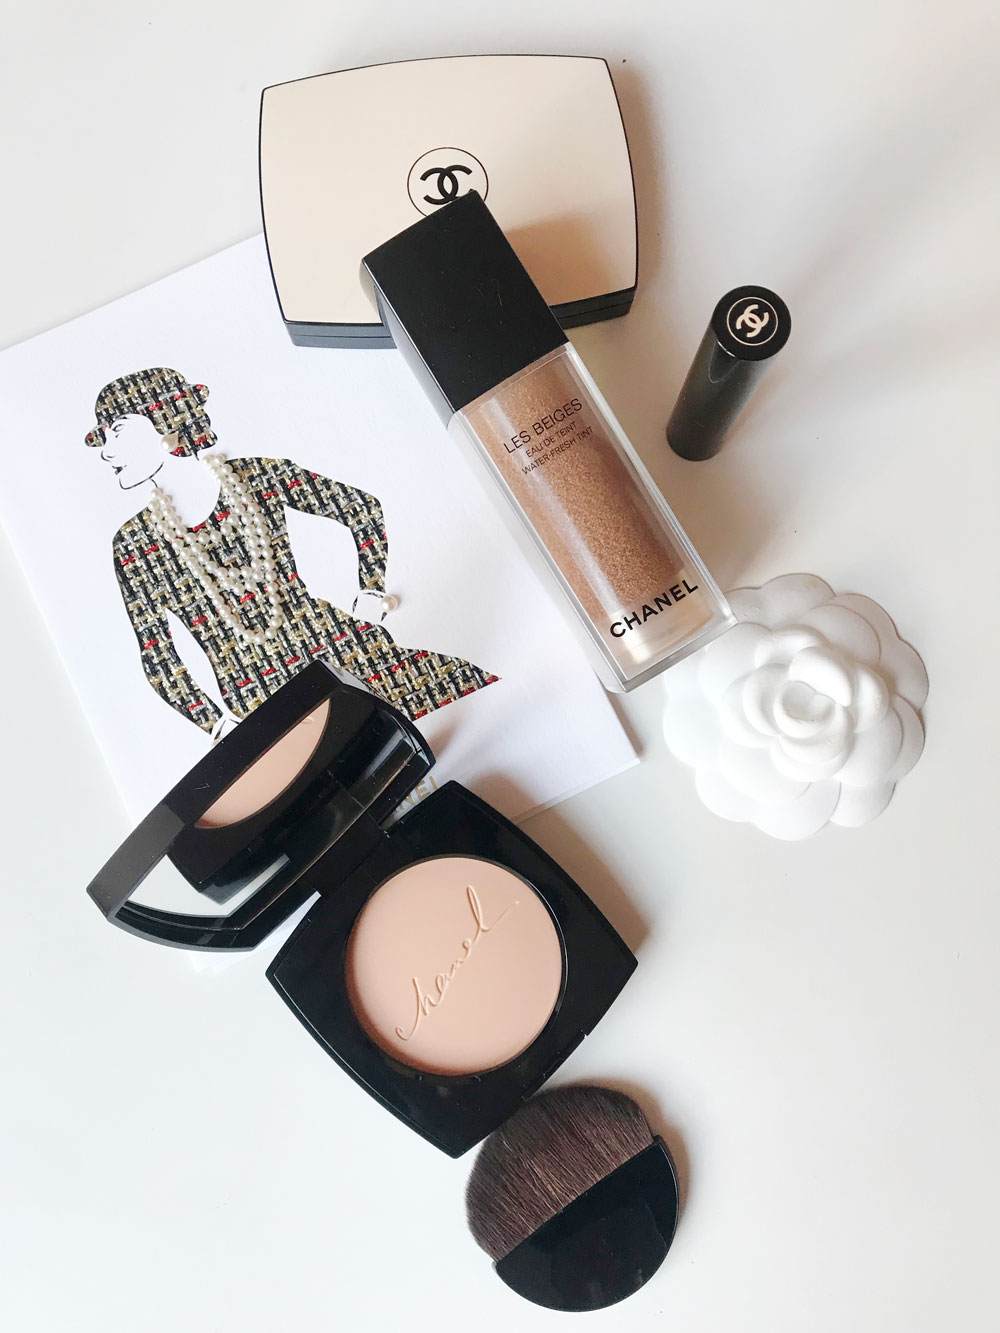 Chanel erweiter die Les Beiges Kollektion um tolle Makeup-Neuheiten, die selbst eine geschwätziger Beauty-Bloggerin vor Freude verstummen lässt. 